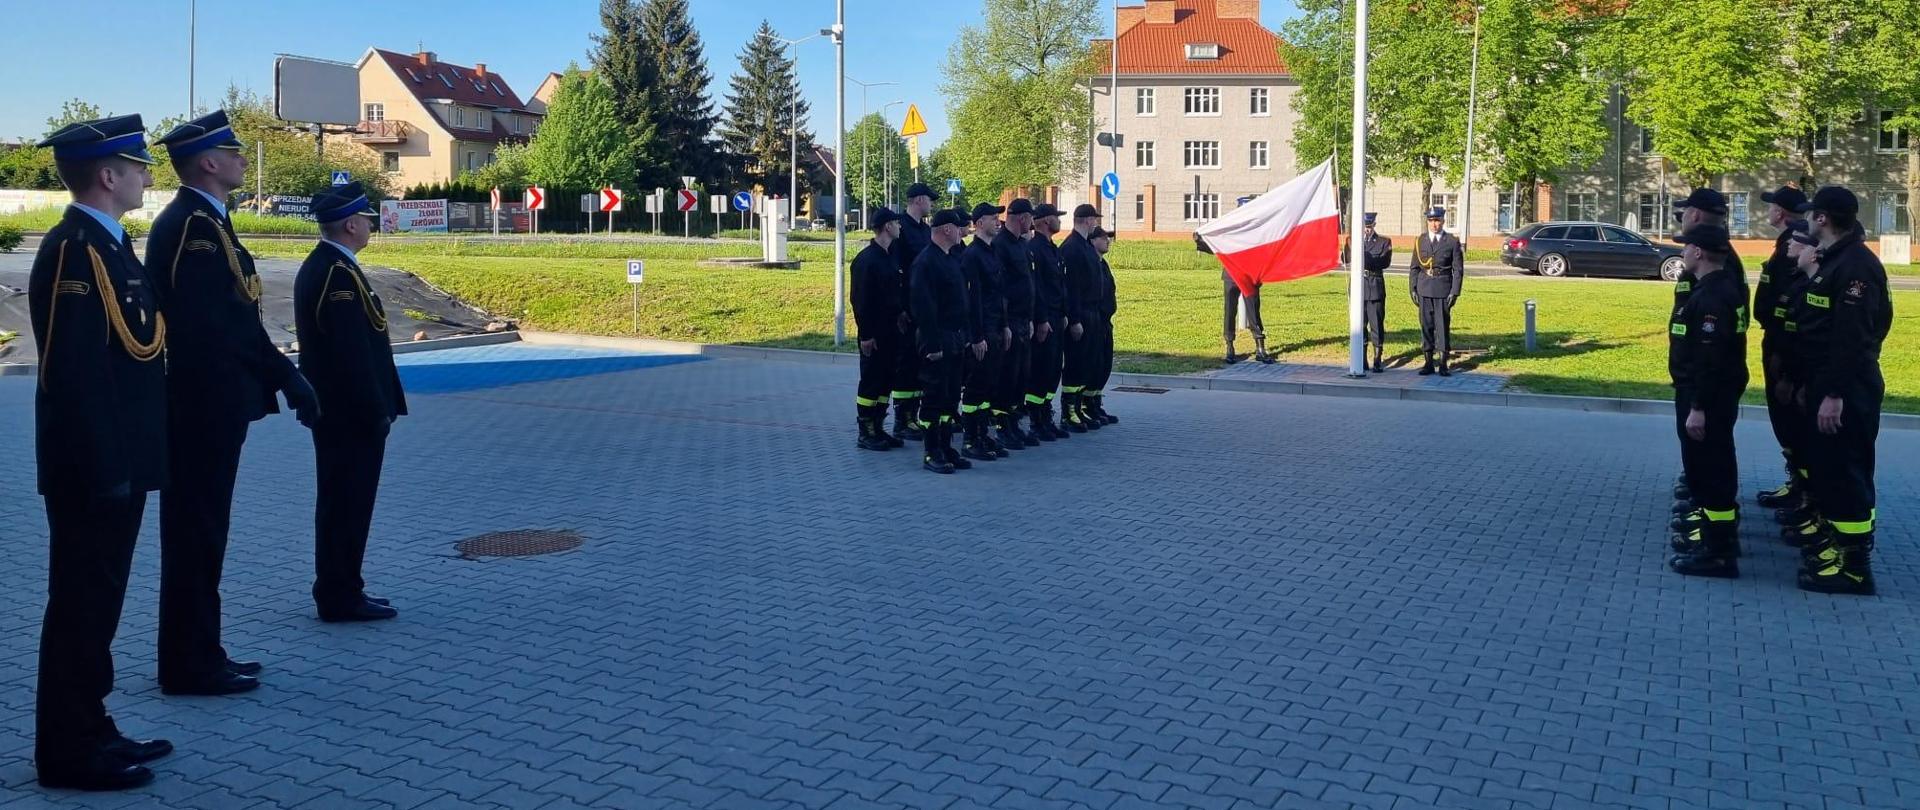 Na przeciwko siebie stoją w dwuszeregu strażacy w ubraniu koszarowym, po środku nich znajduje się maszt flagowy i poczet flagowy składający się z trzech strażaków ubranych w mundury wyjściowe. Strażacy prezentują flagę Rzeczypospolitej Polskiej.